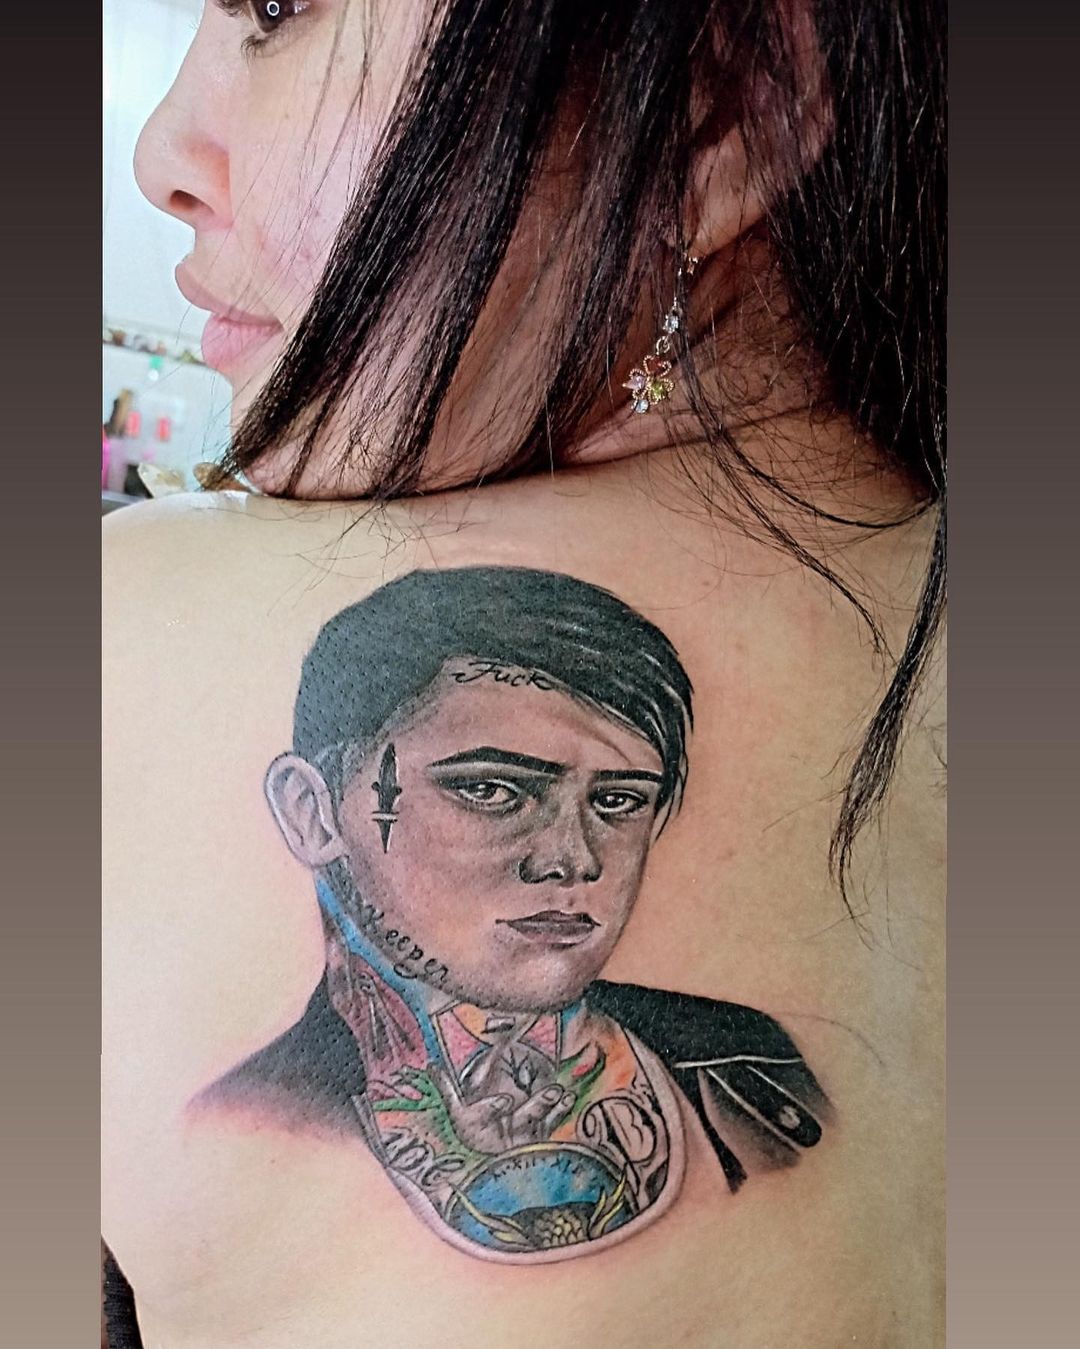 Una mujer barranquillera se tatuó la cara de Yeferson Cossio en la espalda.